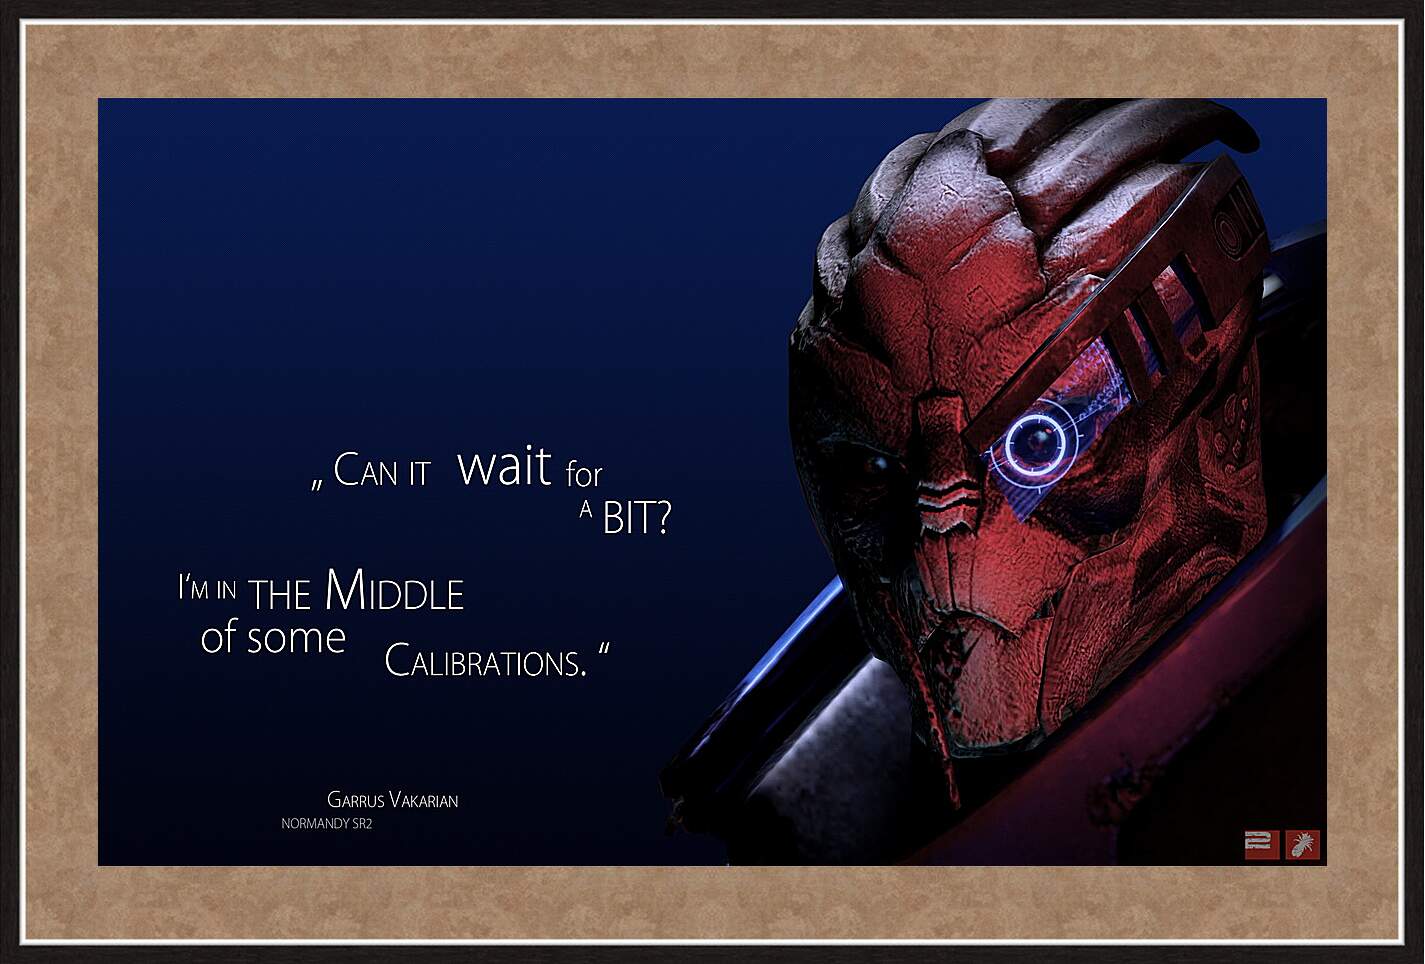 Картина в раме - Mass Effect 2